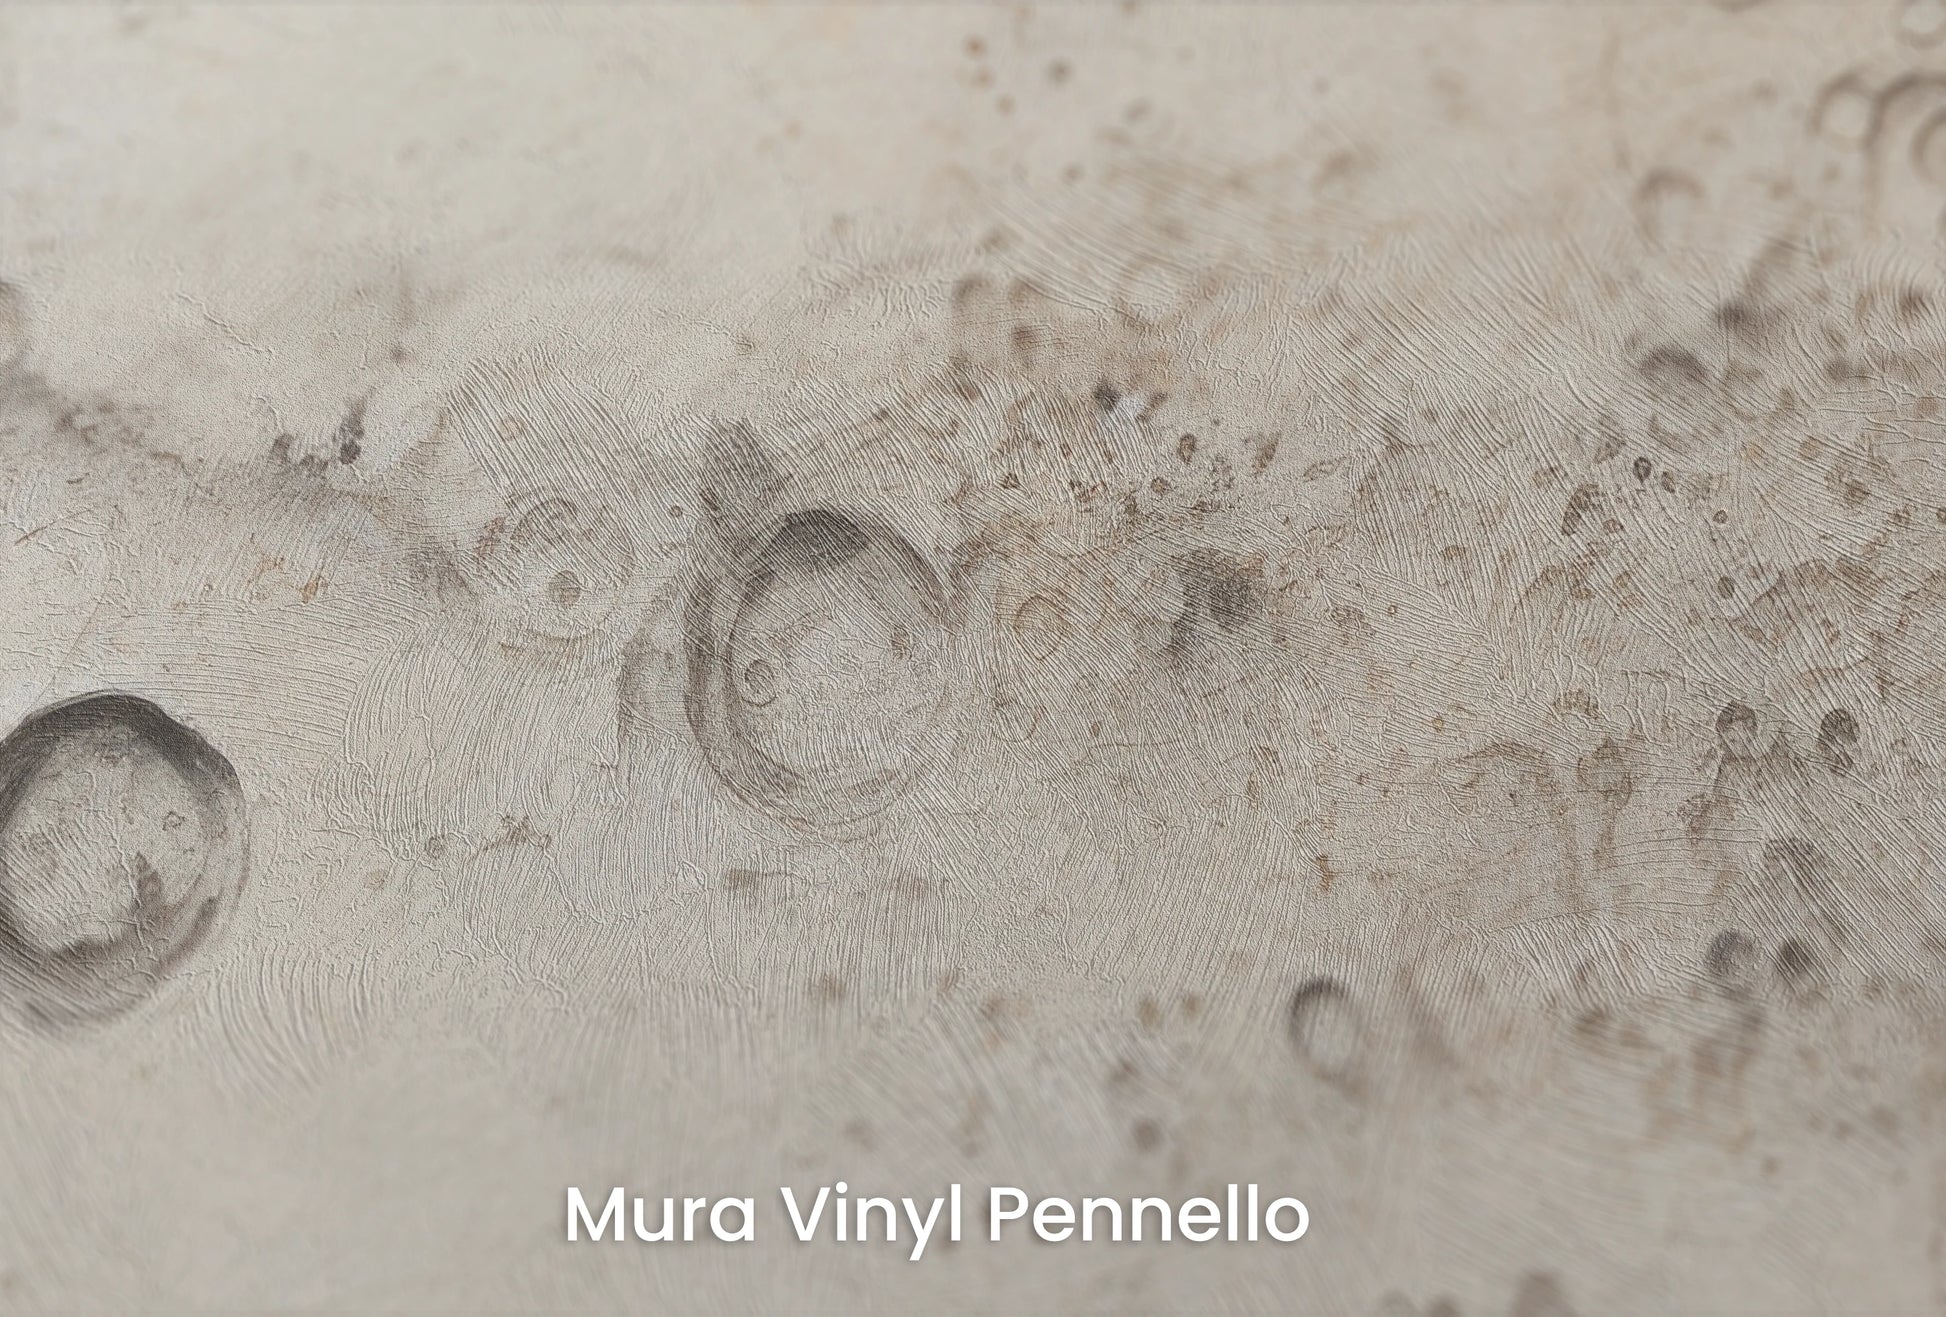 Zbliżenie na artystyczną fototapetę o nazwie Jupiter's Swirl na podłożu Mura Vinyl Pennello - faktura pociągnięć pędzla malarskiego.